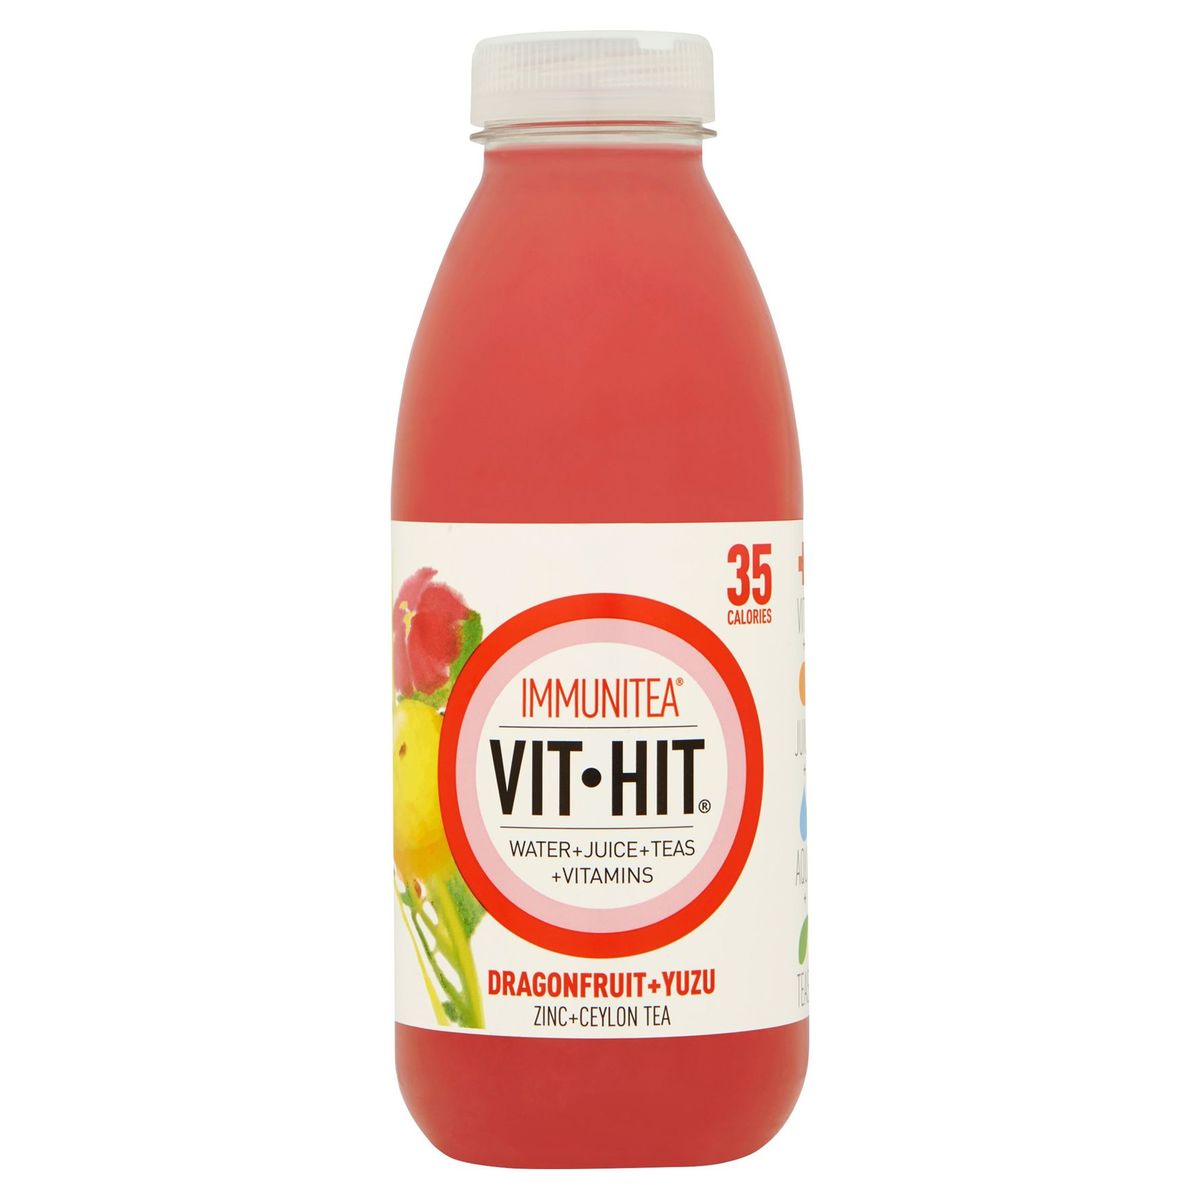 Vit-Hit Immunitea Dragonfruit + Yuzu Zinc + Ceylon Tea 500 ml